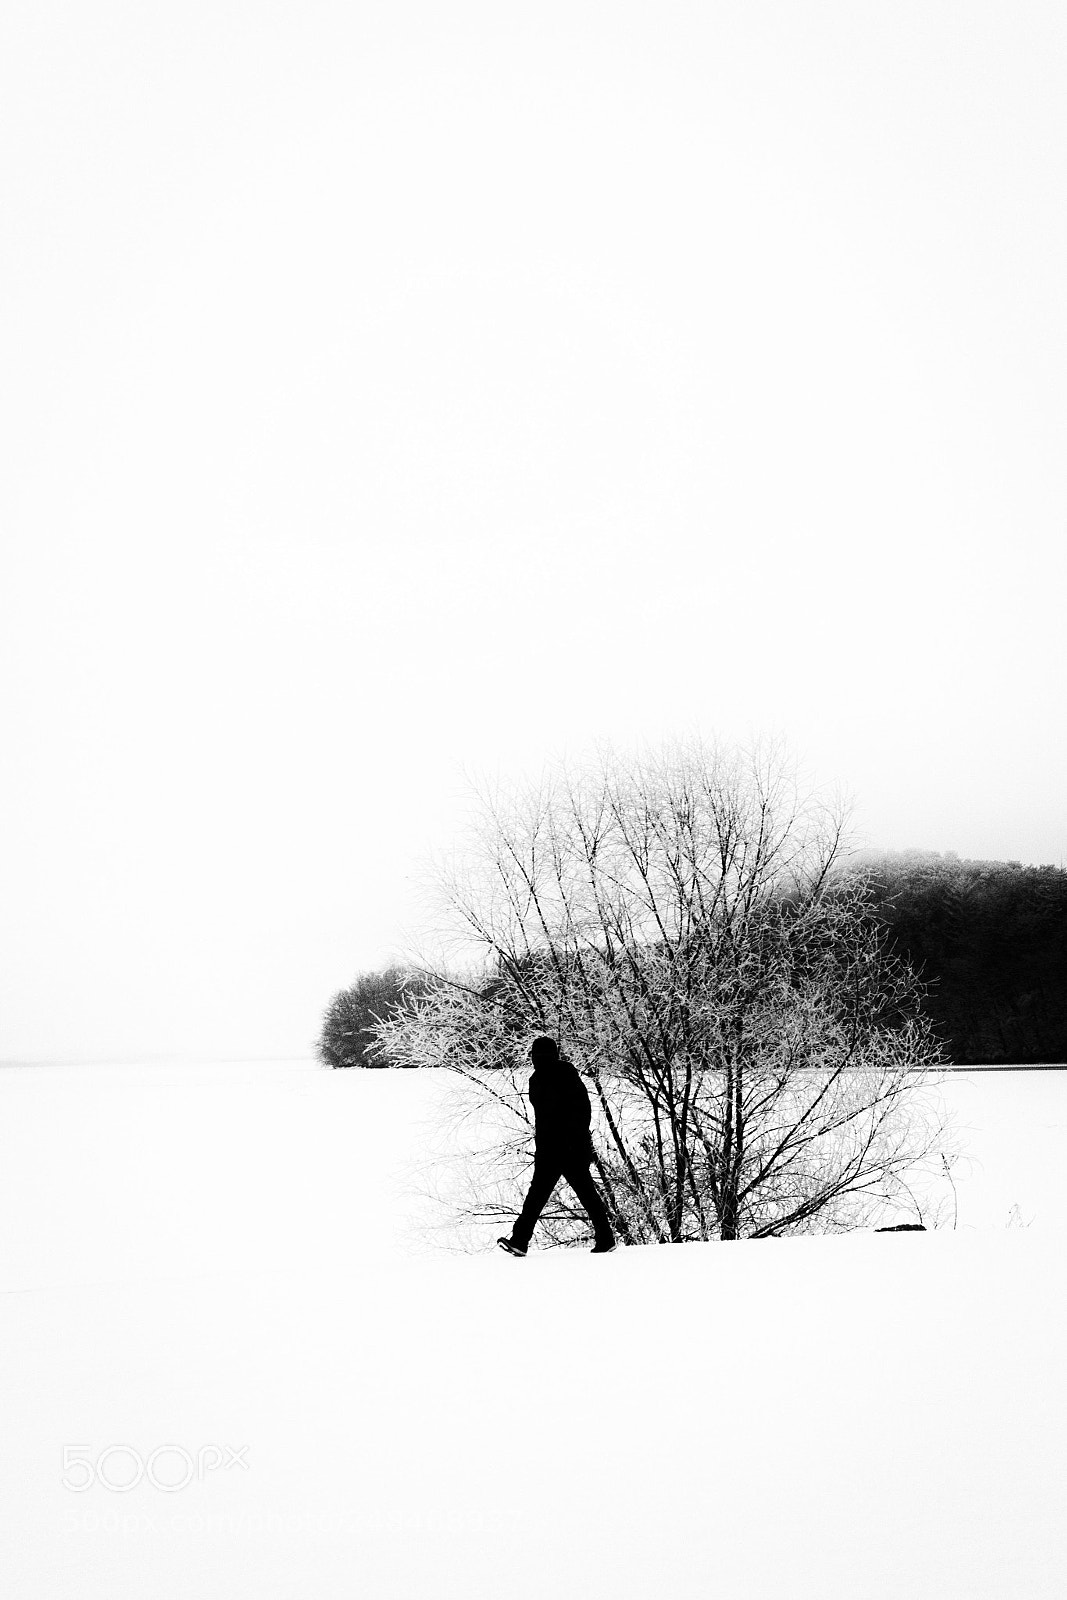 Canon EOS 100D (EOS Rebel SL1 / EOS Kiss X7) sample photo. A man in frozen photography